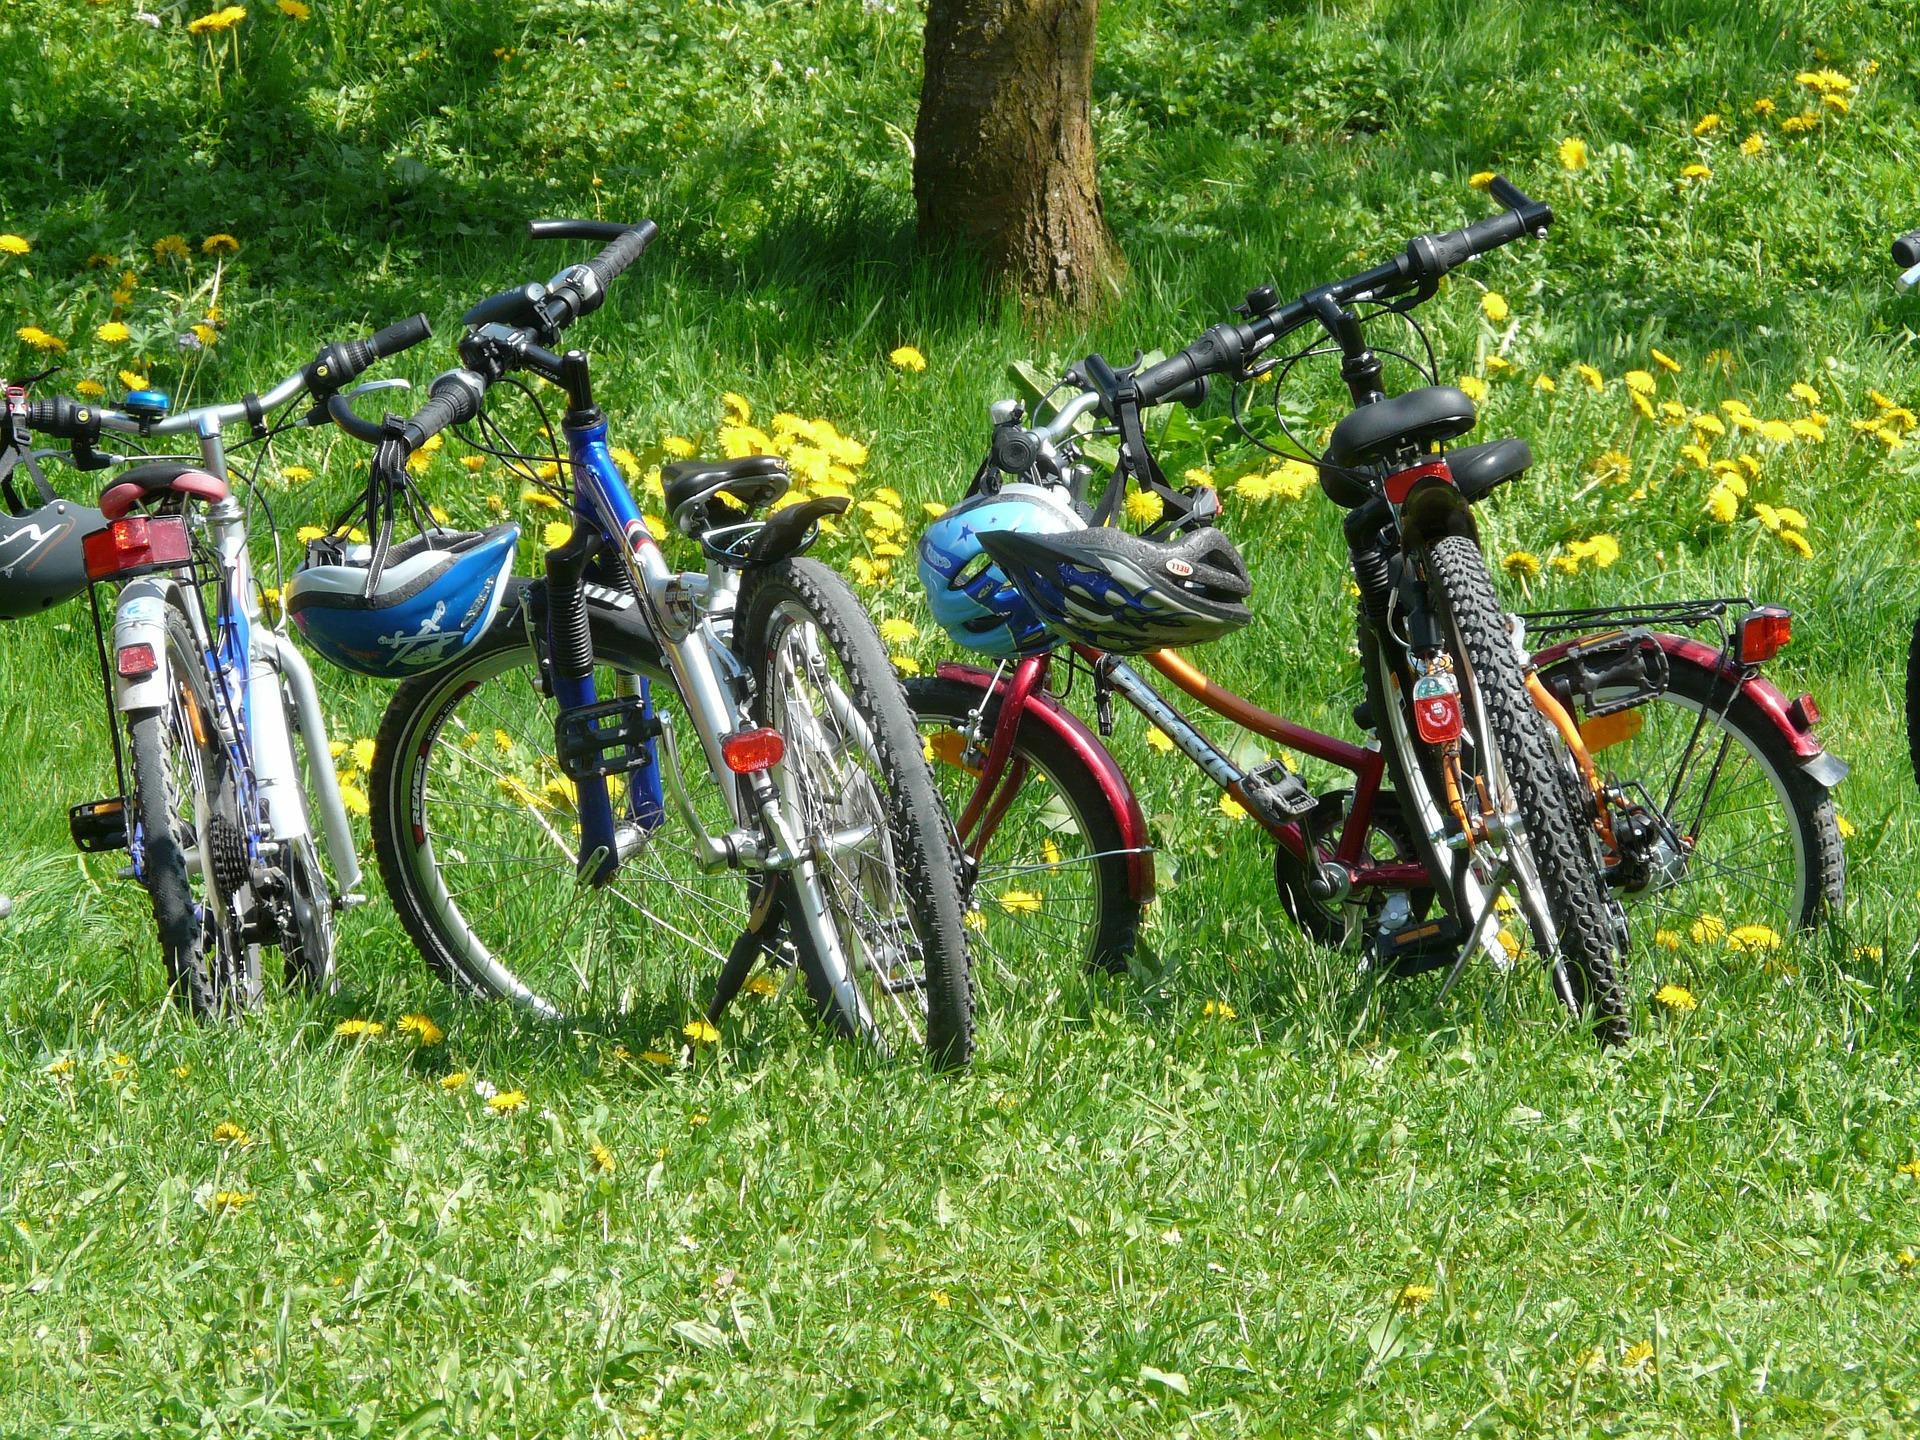 bikes in a field